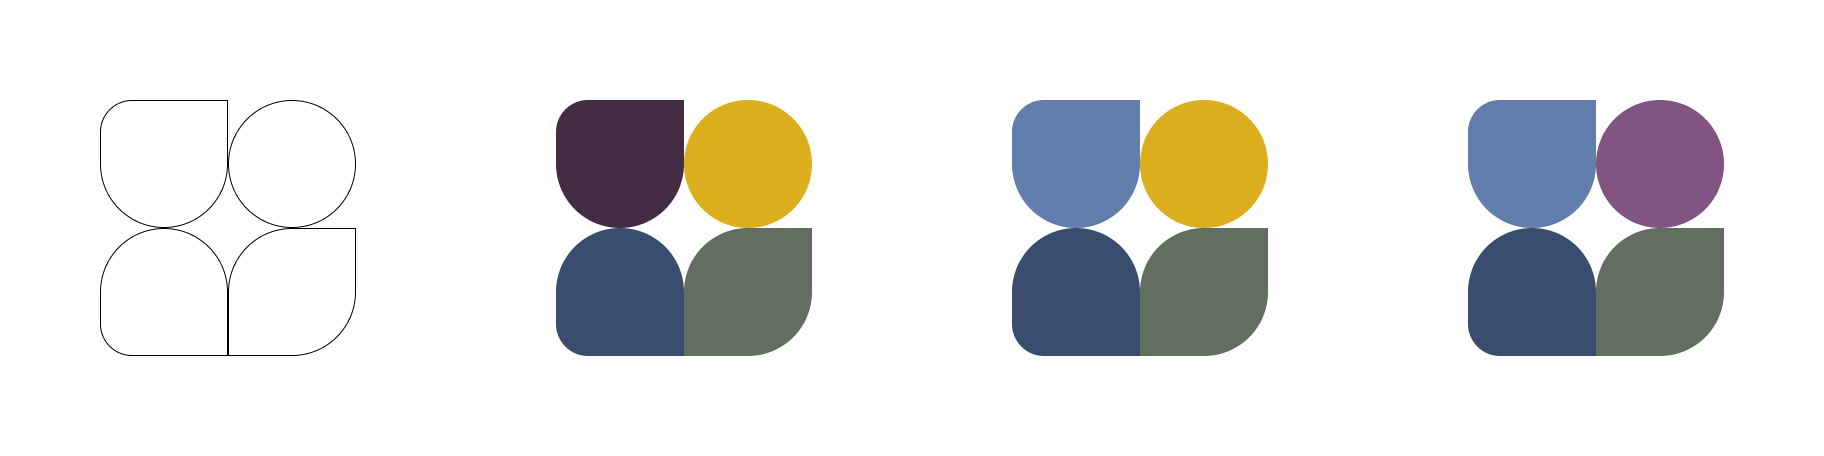 Adding colors to the Lagom UI logo option A